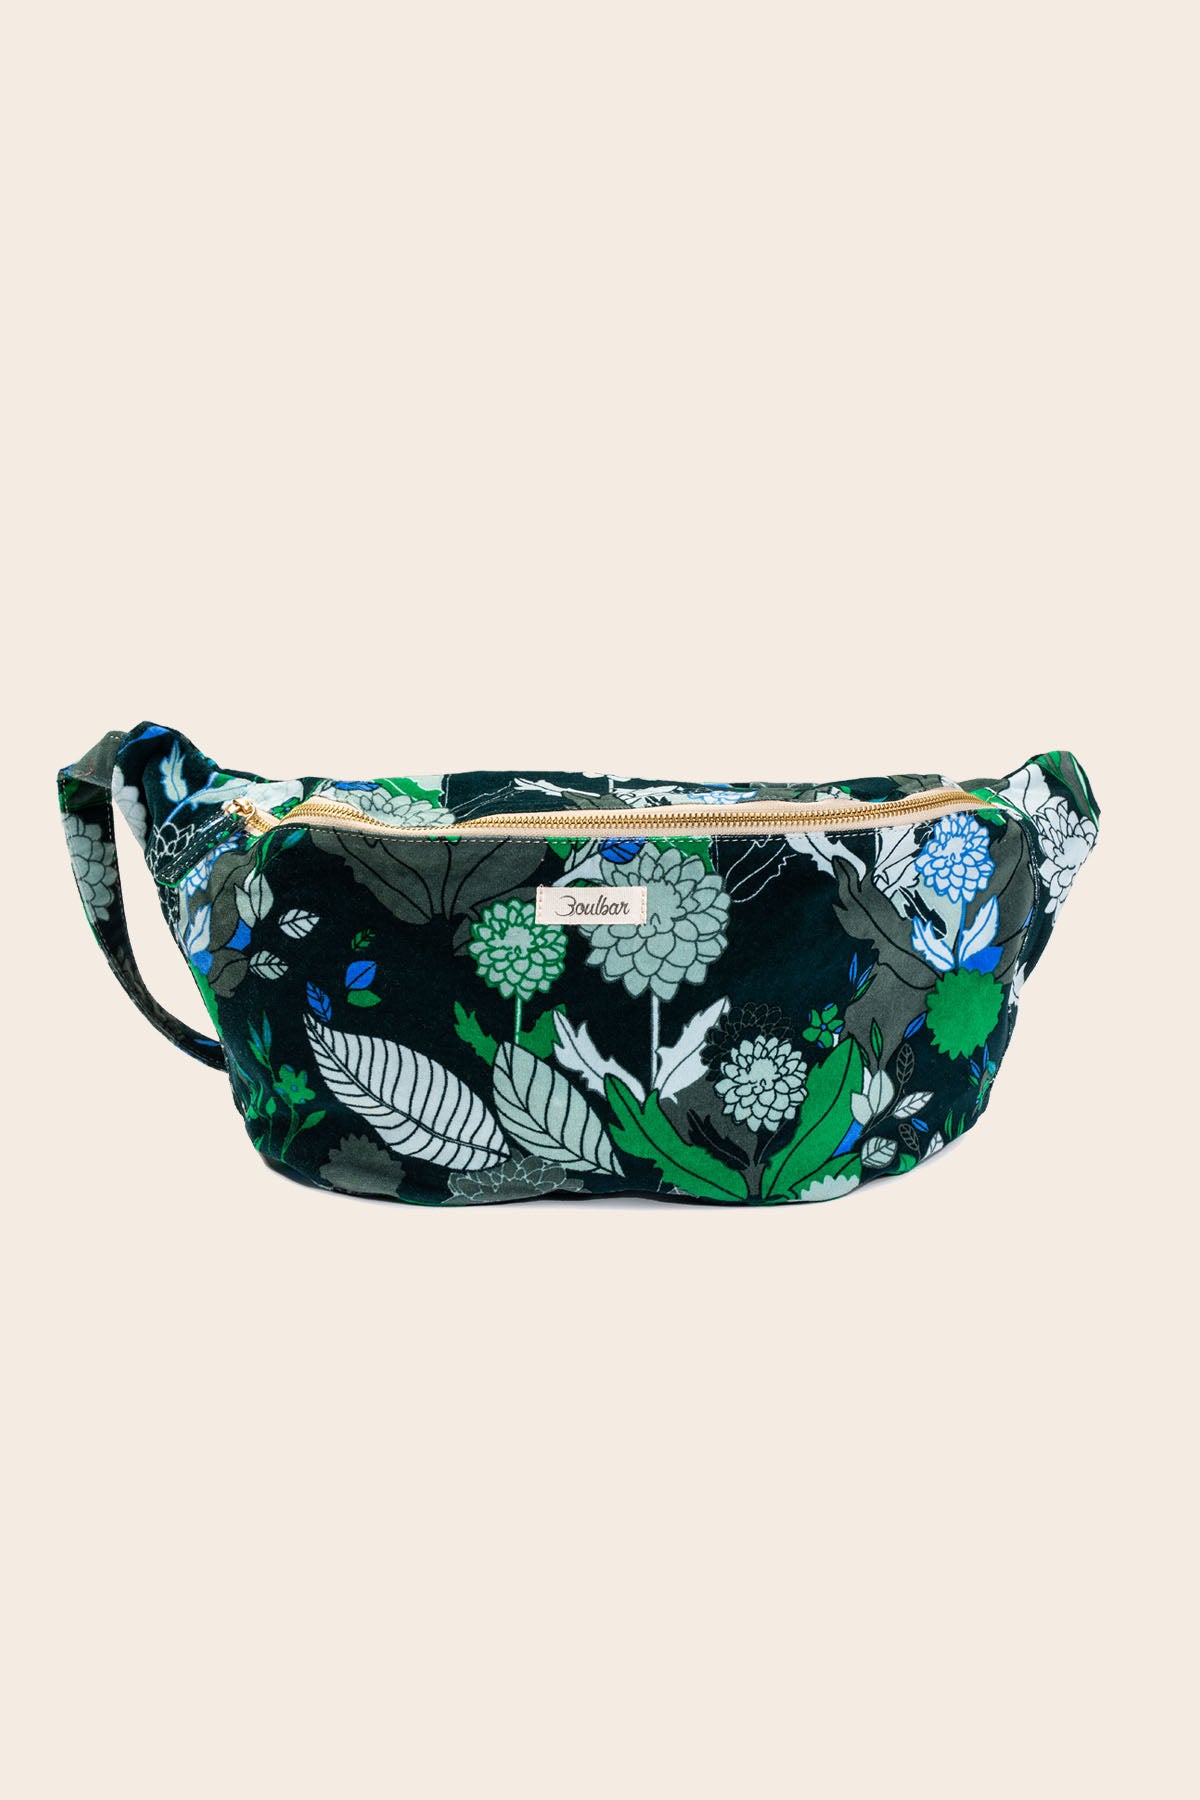 XL belt bag - autumn - green